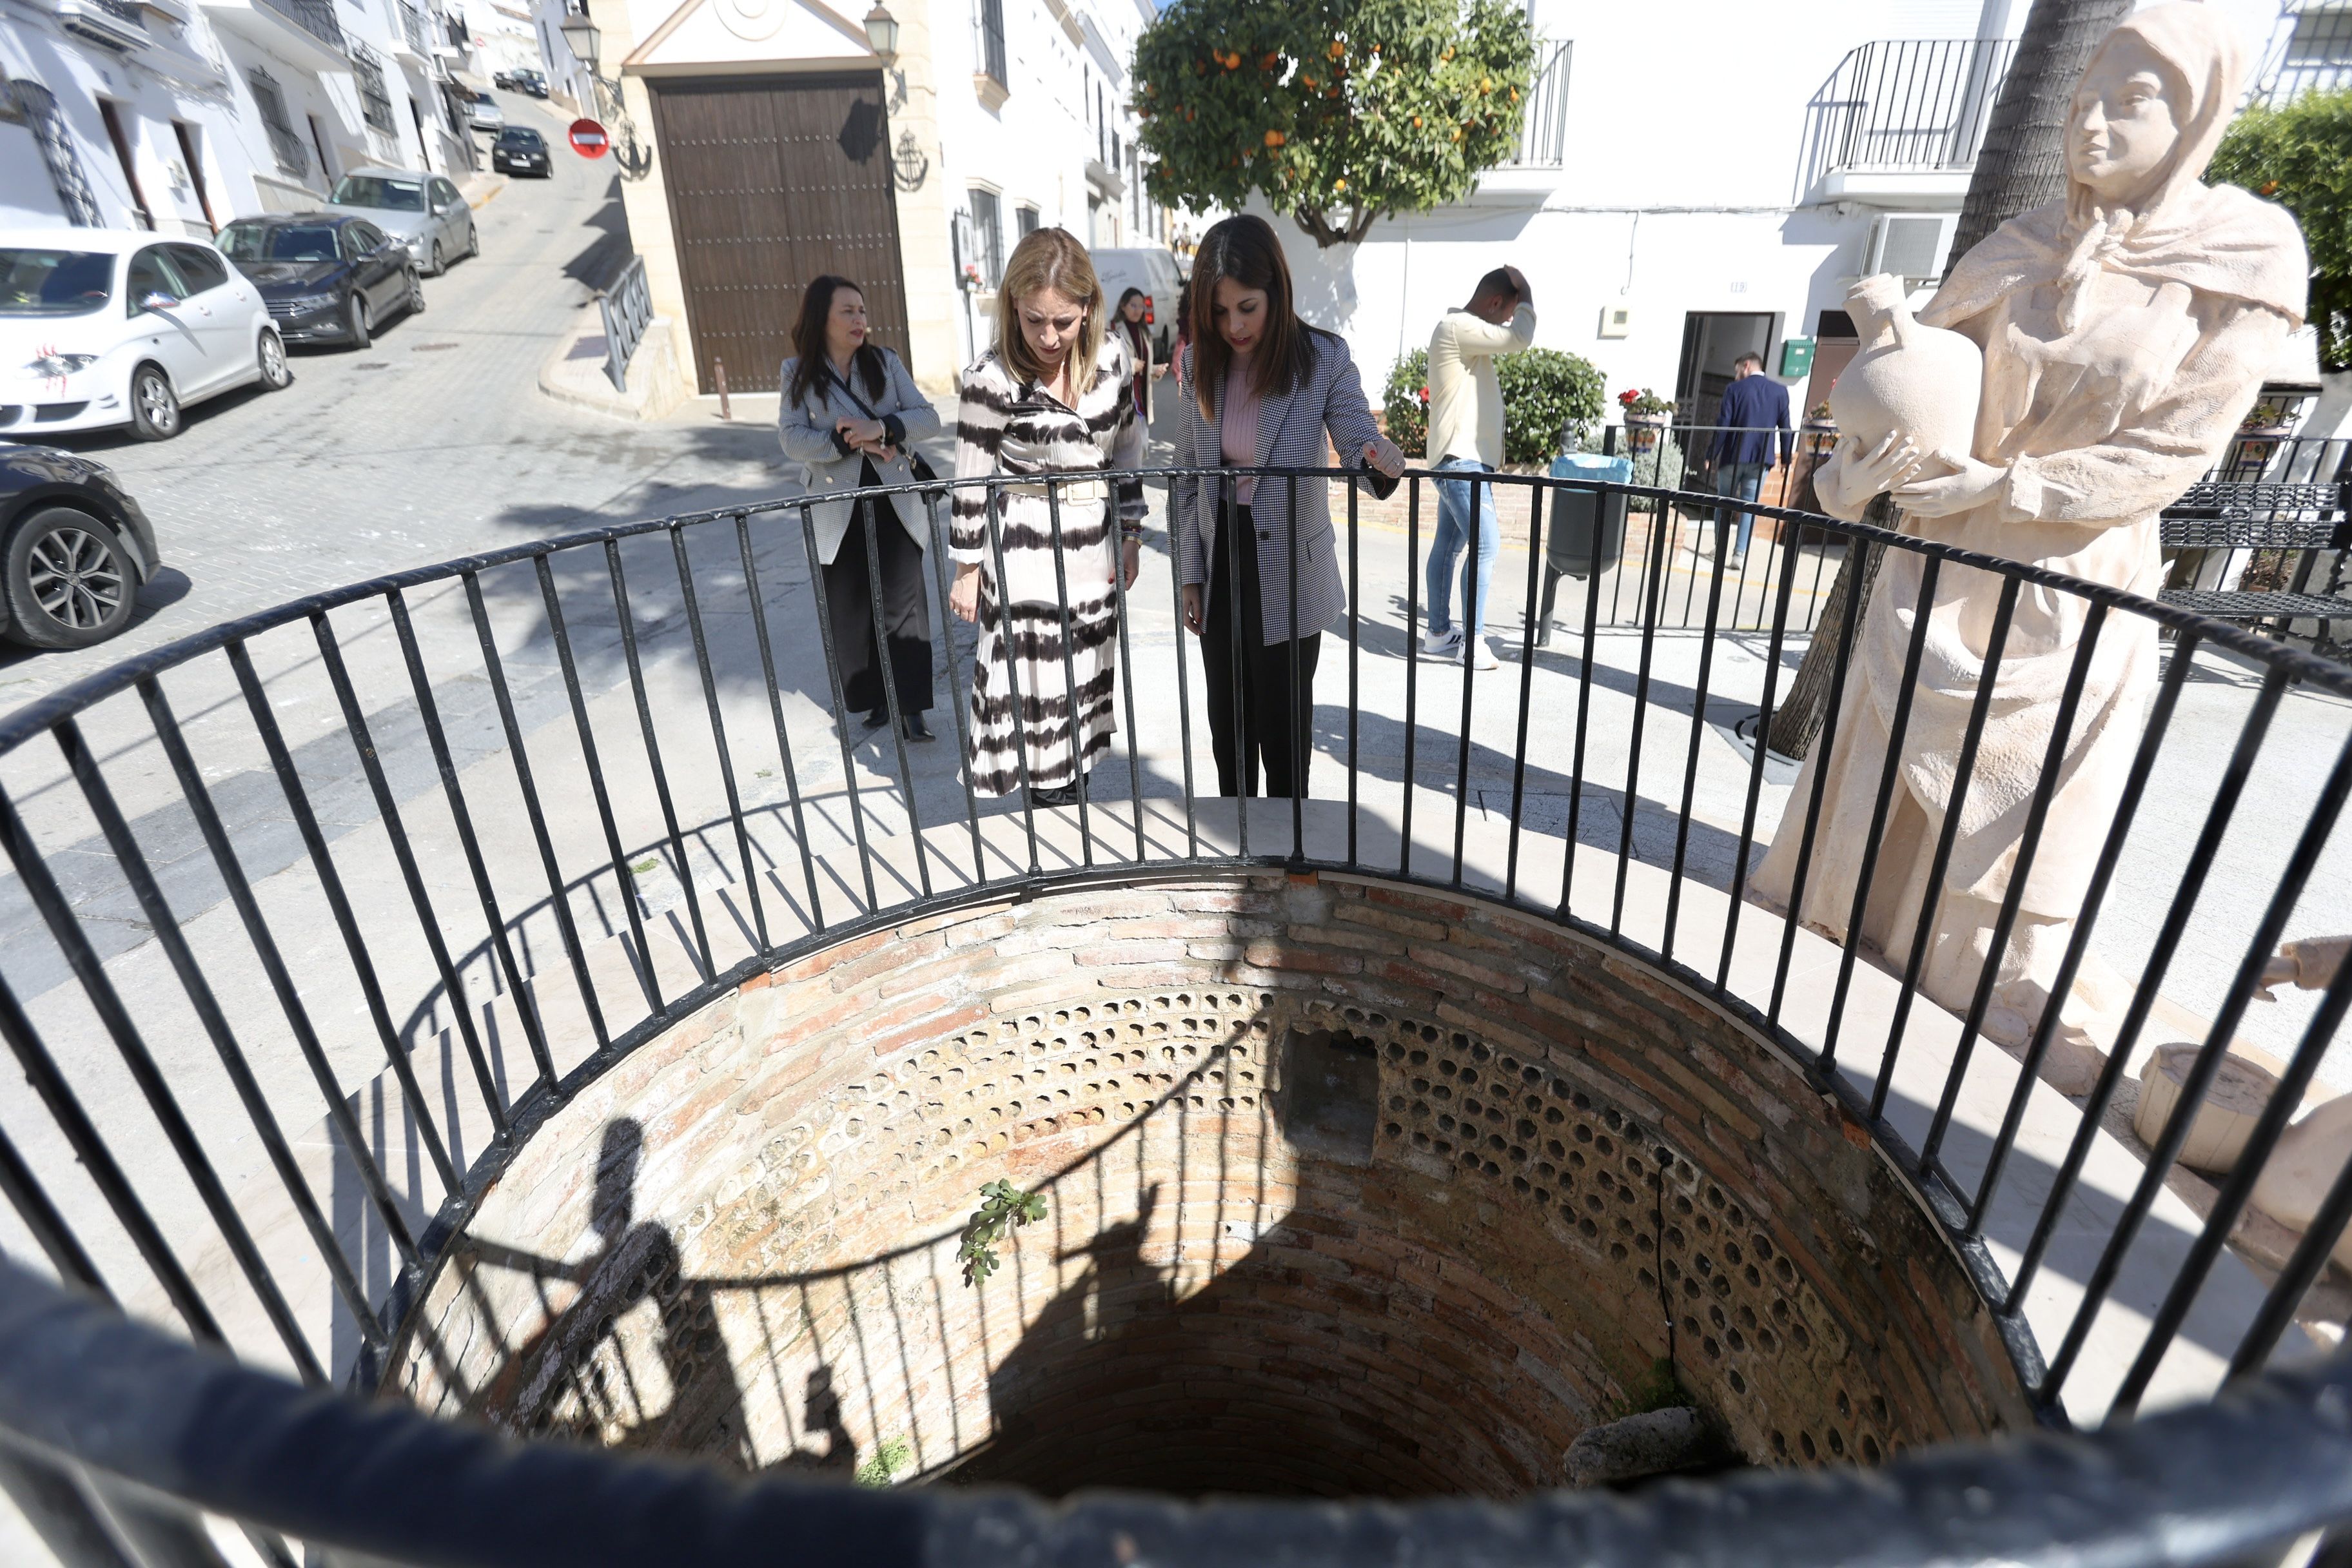 Diputación de Cádiz se compromete al arreglo de carreteras en Espera. Almudena Martínez y Tamara Lozano, en la plaza del pozo.